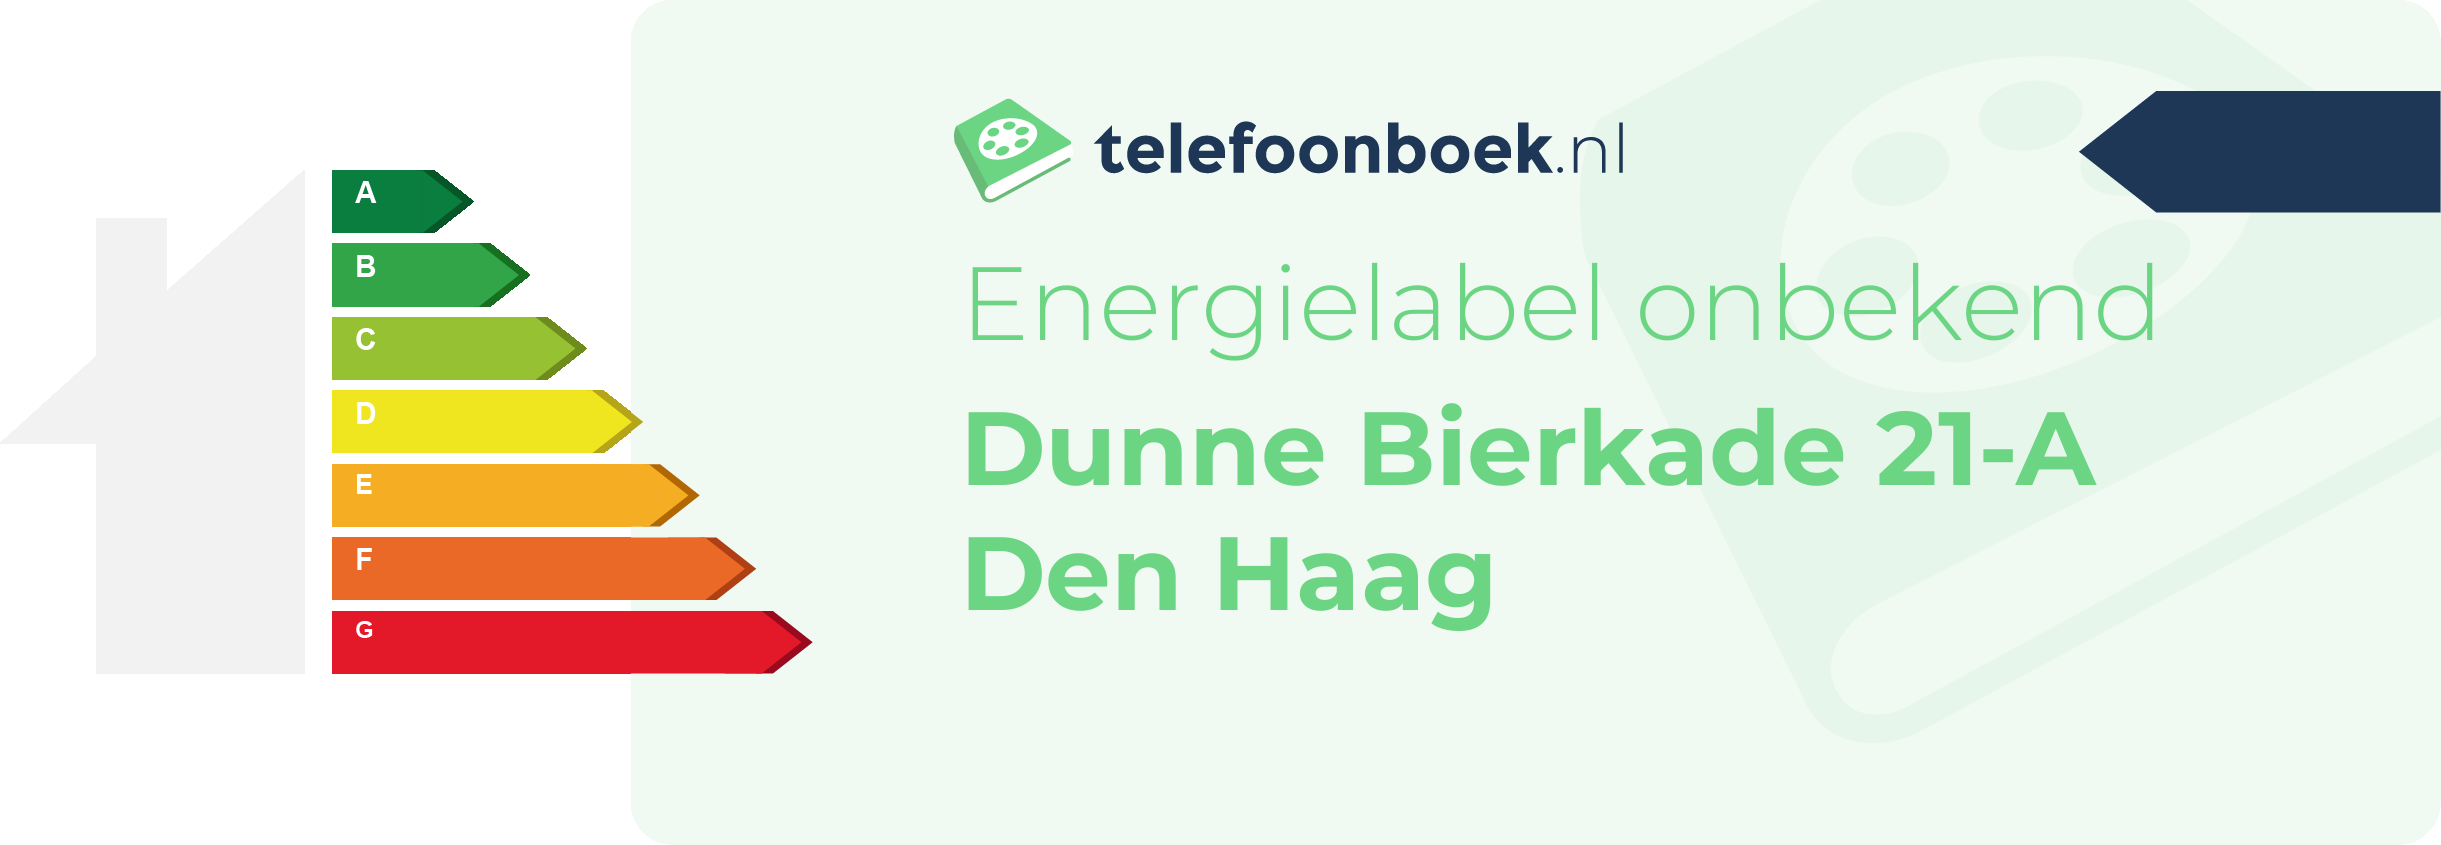 Energielabel Dunne Bierkade 21-A Den Haag